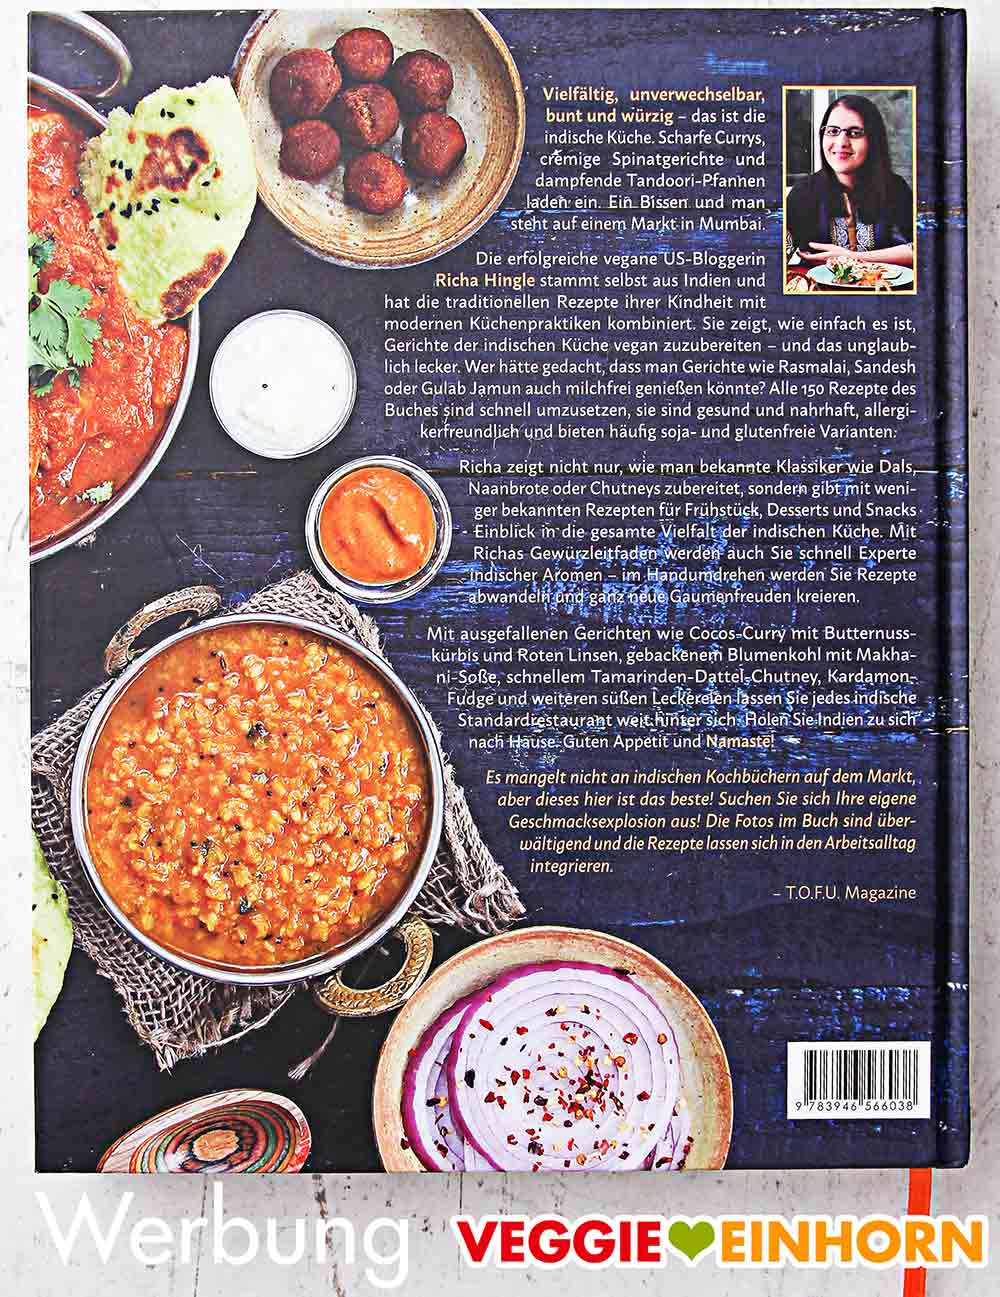 Indisch vegetarisch Inkl 1x1 der traditionellen Zubereitung von Fladenbrot und Reis DAS Indien Kochbuch 90 vegetarische und vegane Rezepte aus ganz Indien DAS authentische Indien Kochbuch